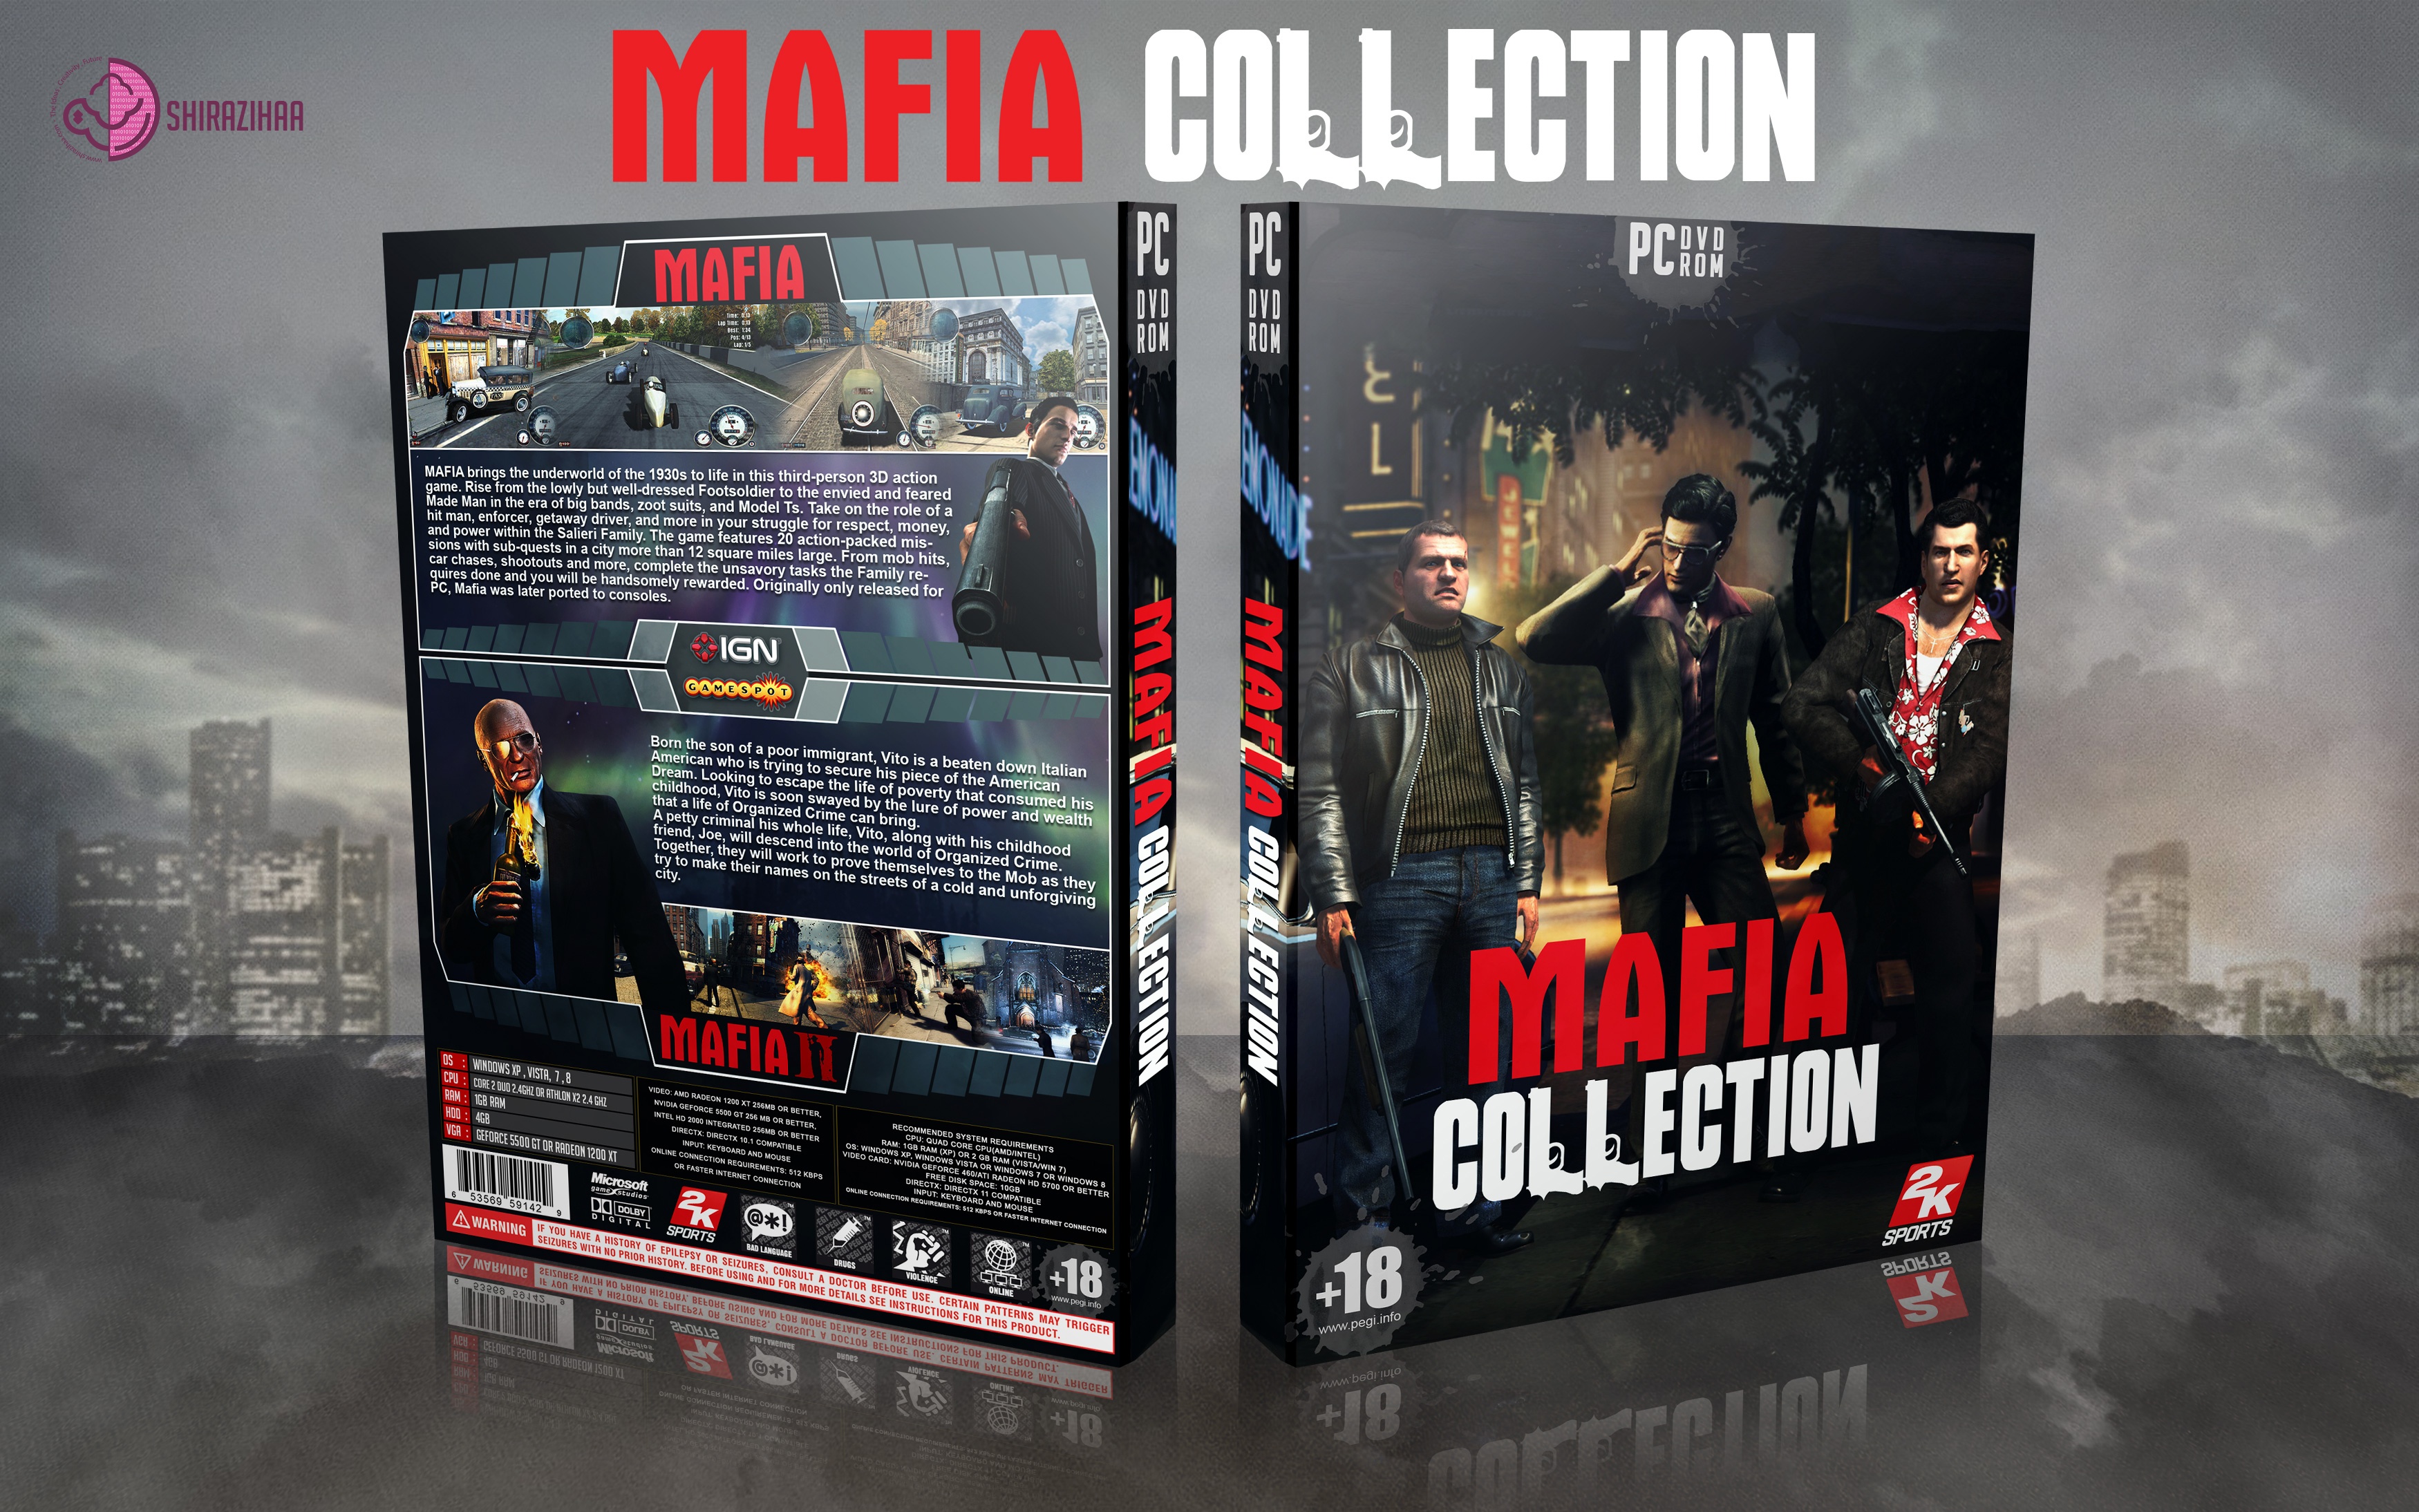 Mafia Collection box cover